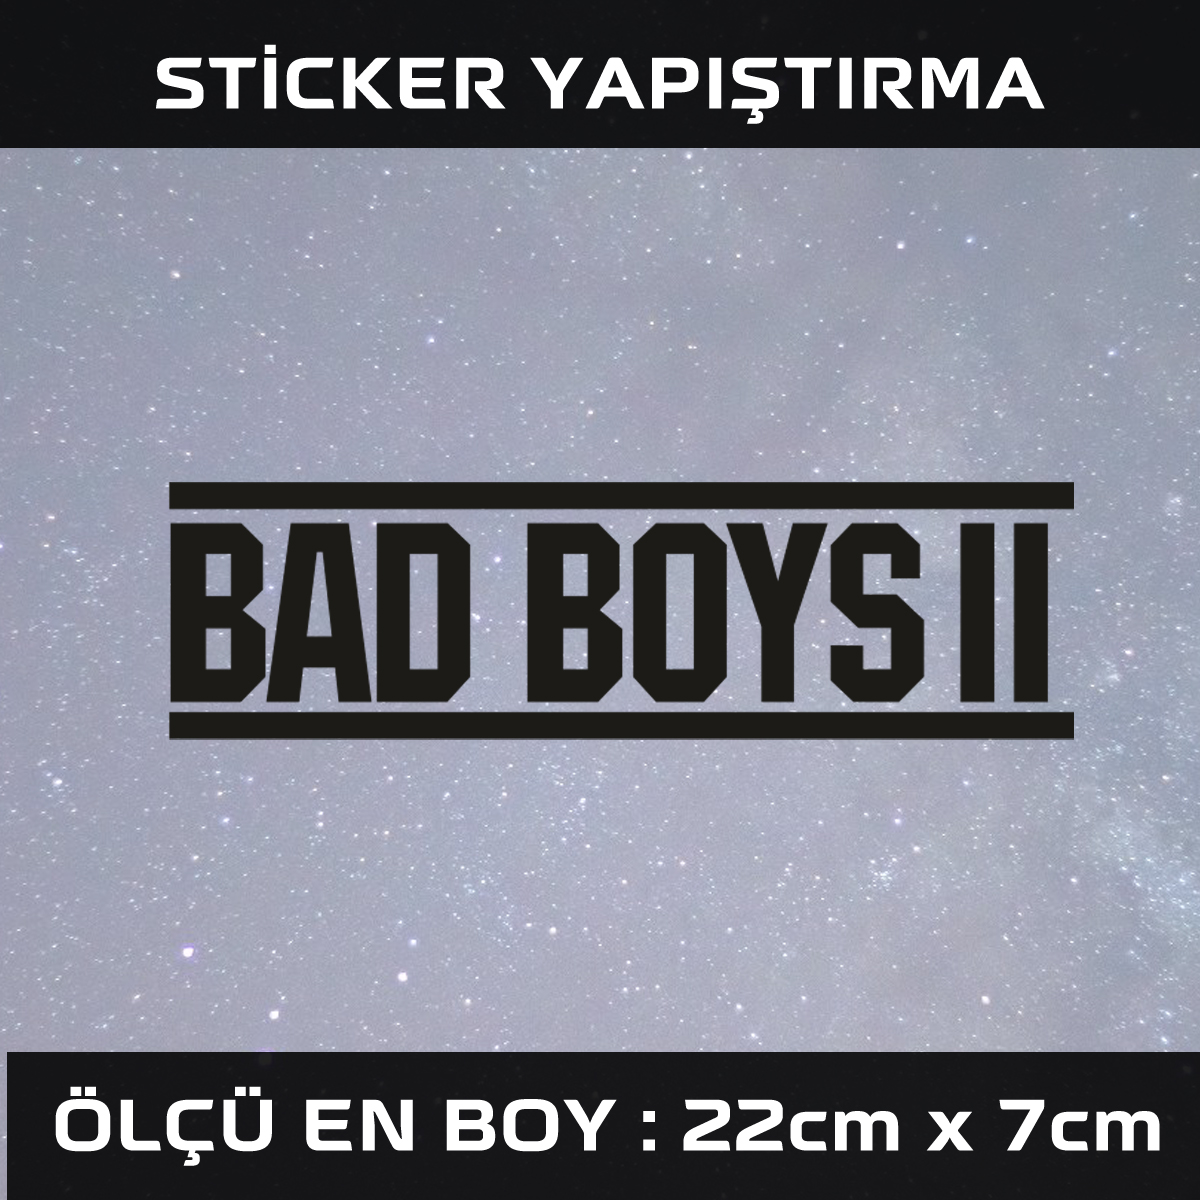 kotu cocuk sticker - Kötü çoçuk - araba çıkartması etiket sticker